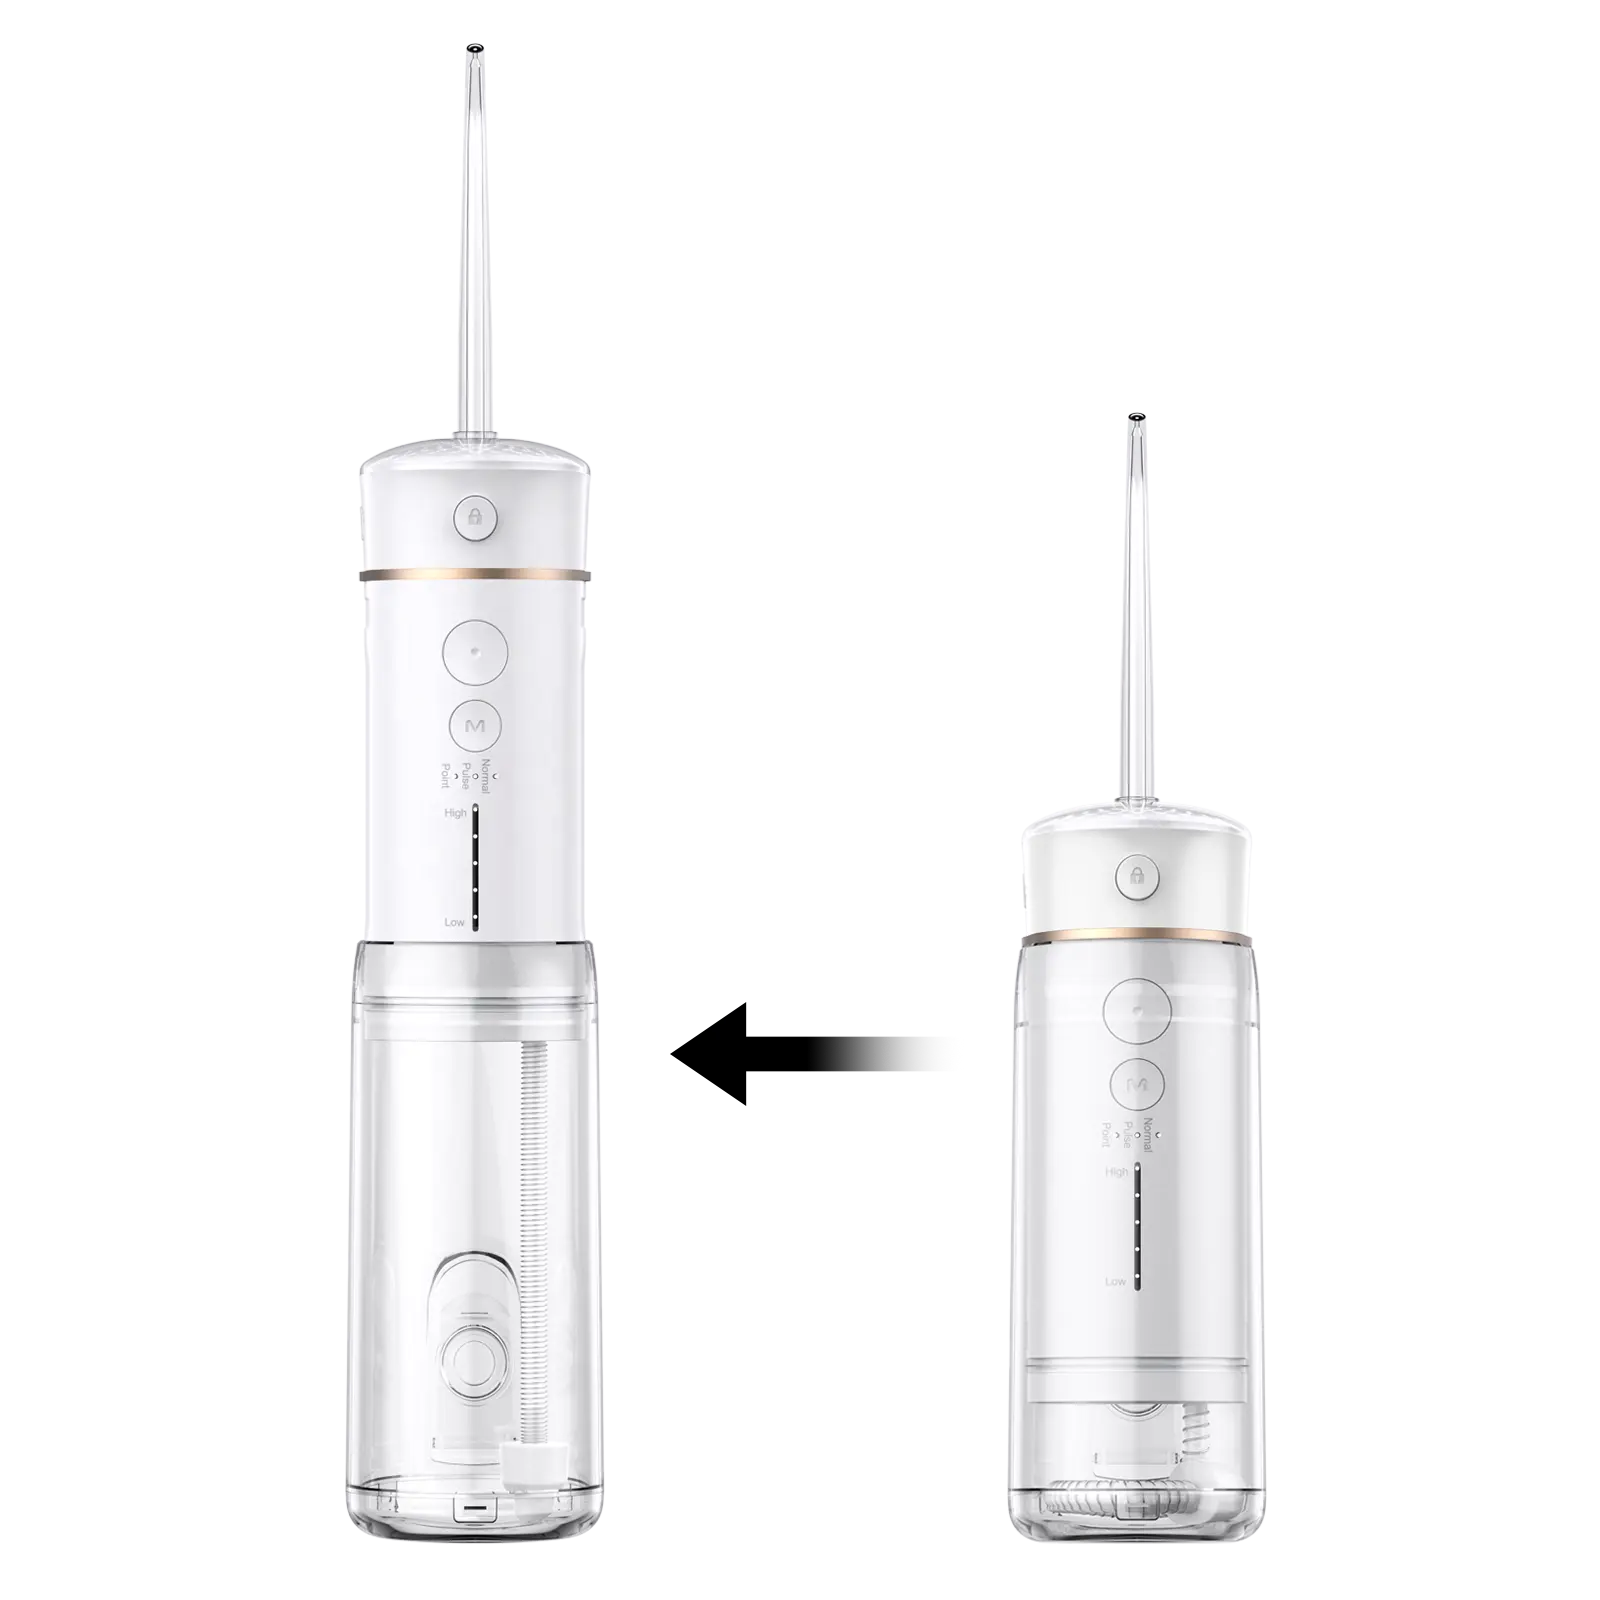 Flosser dentale ad acqua per la cura della salute personale per denti portatili pulitore per denti irrigatore USB ricaricabile Mini filo acqua senza filo